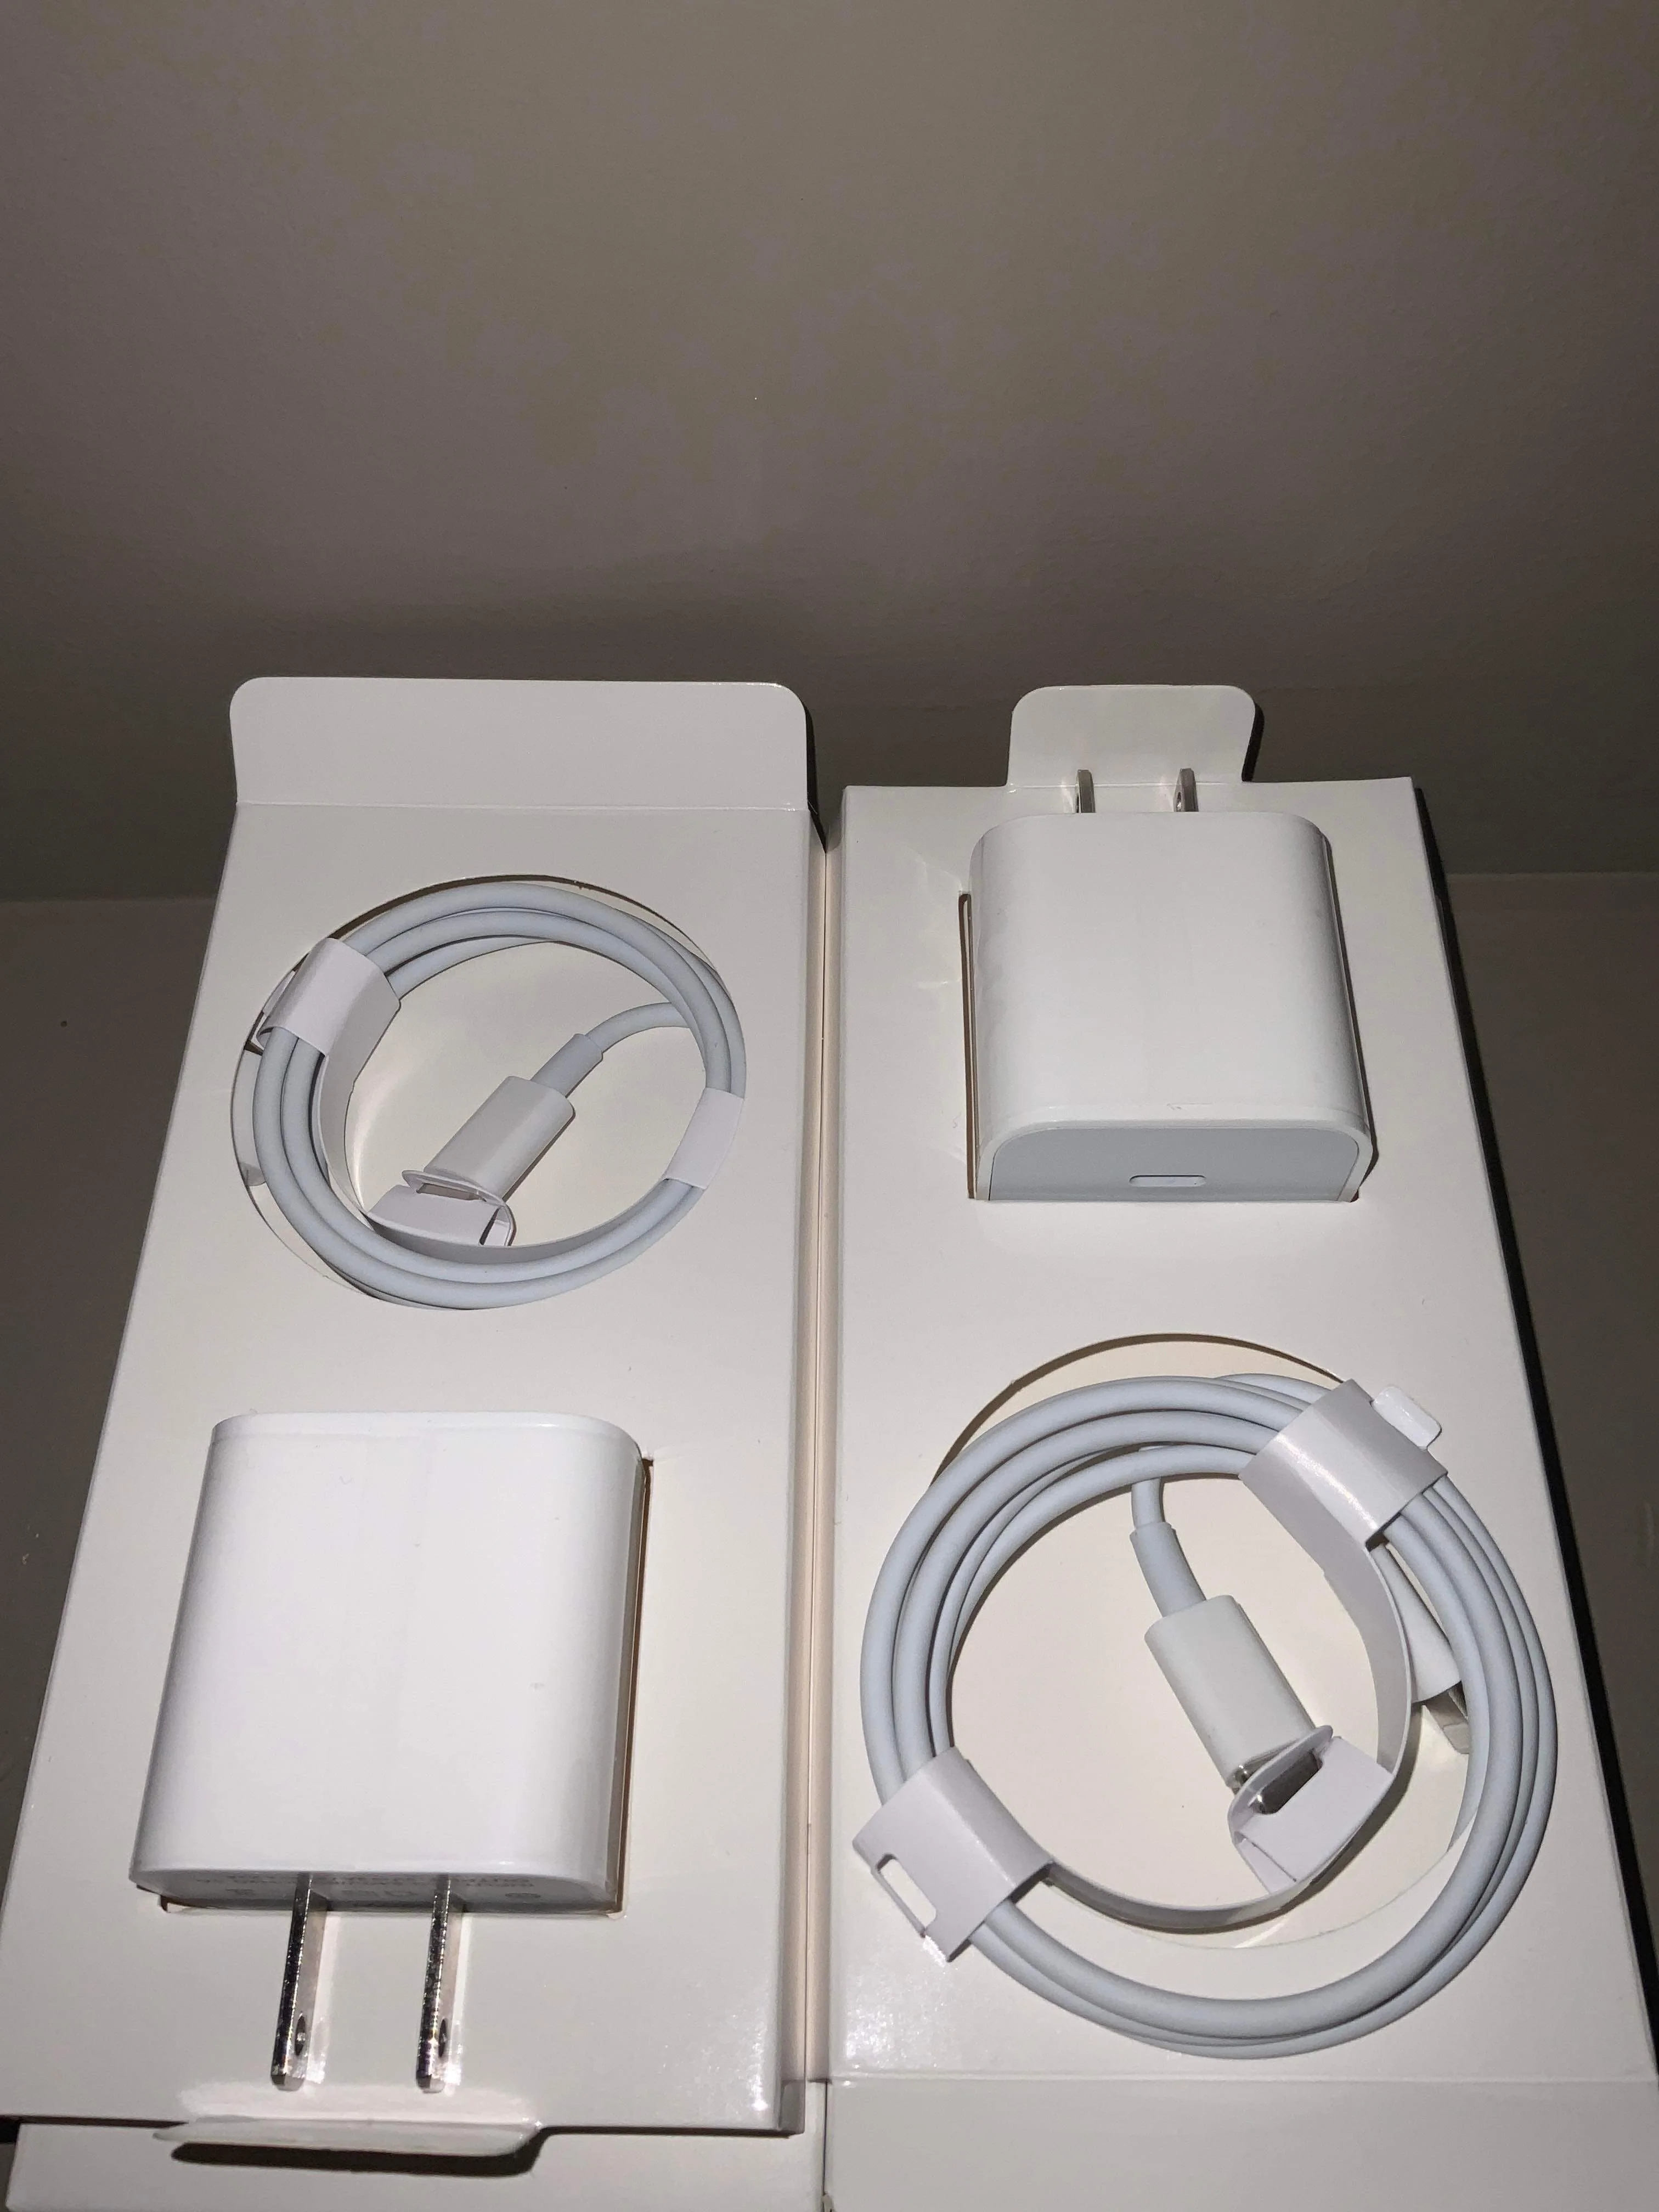 Original 5V 1.2A téléphone adaptateur pour chargeur USB Iphonex/Xs /Xs Max  - Chine chargeur USB et chargeur prix